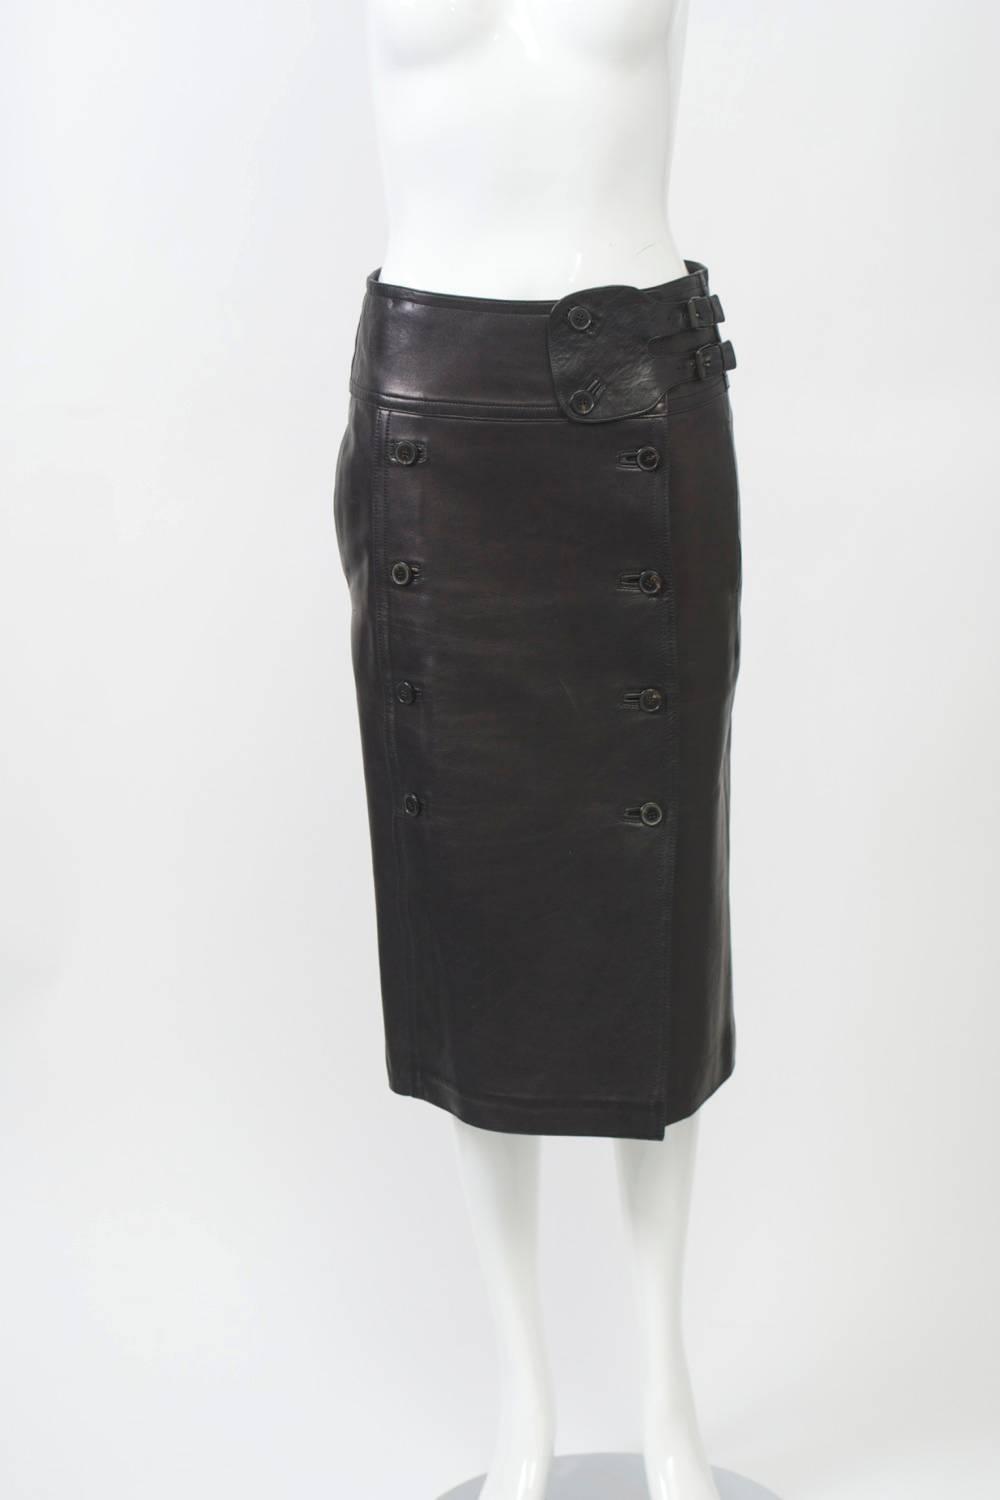 Women's YSL Black Leather Skirt